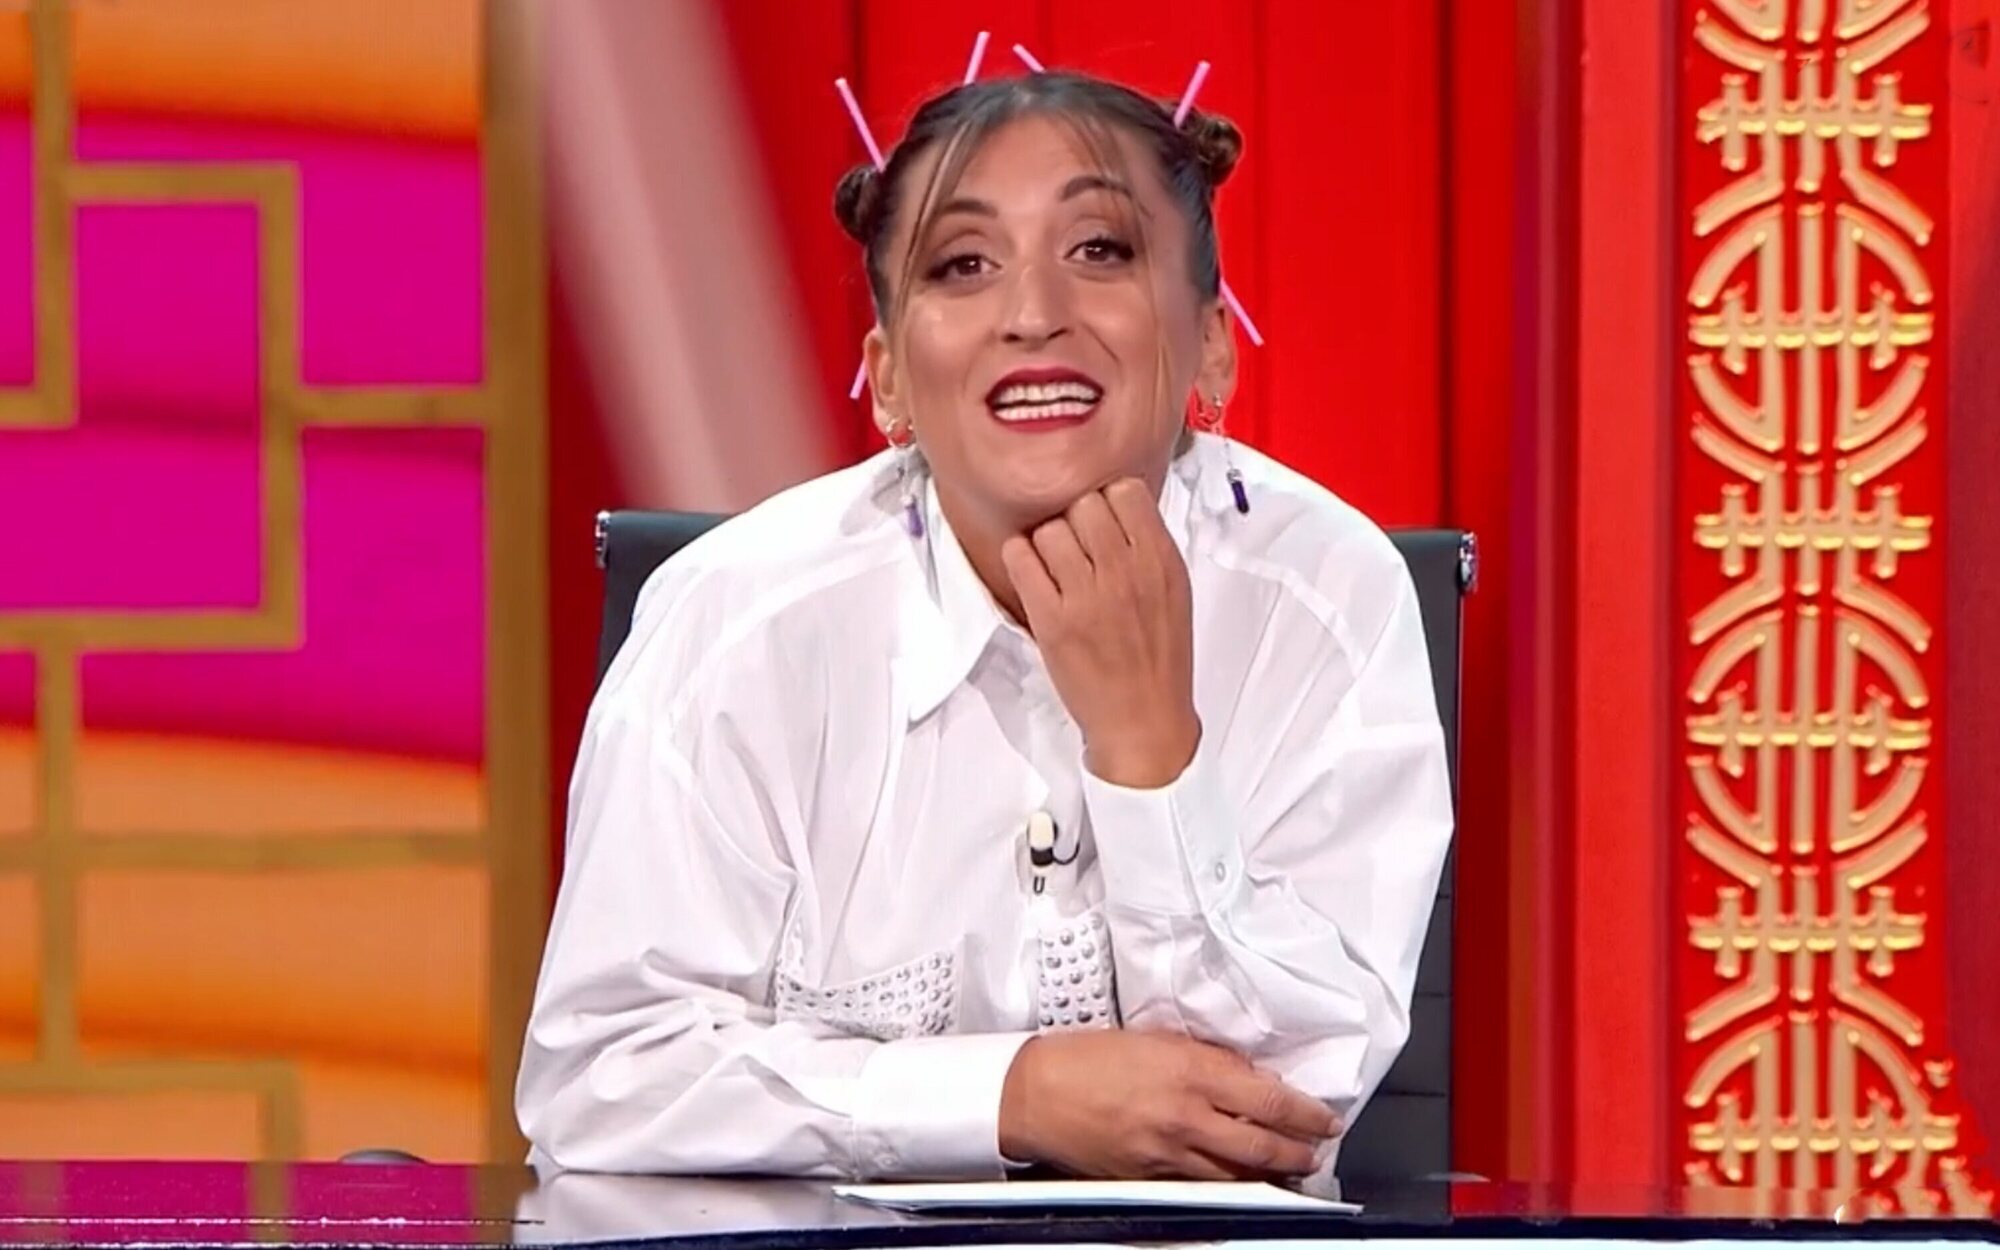 La pulla de Susi Caramelo a Jorge Javier por la cancelación de 'Sálvame': "Eso es cagarse en Telecinco"